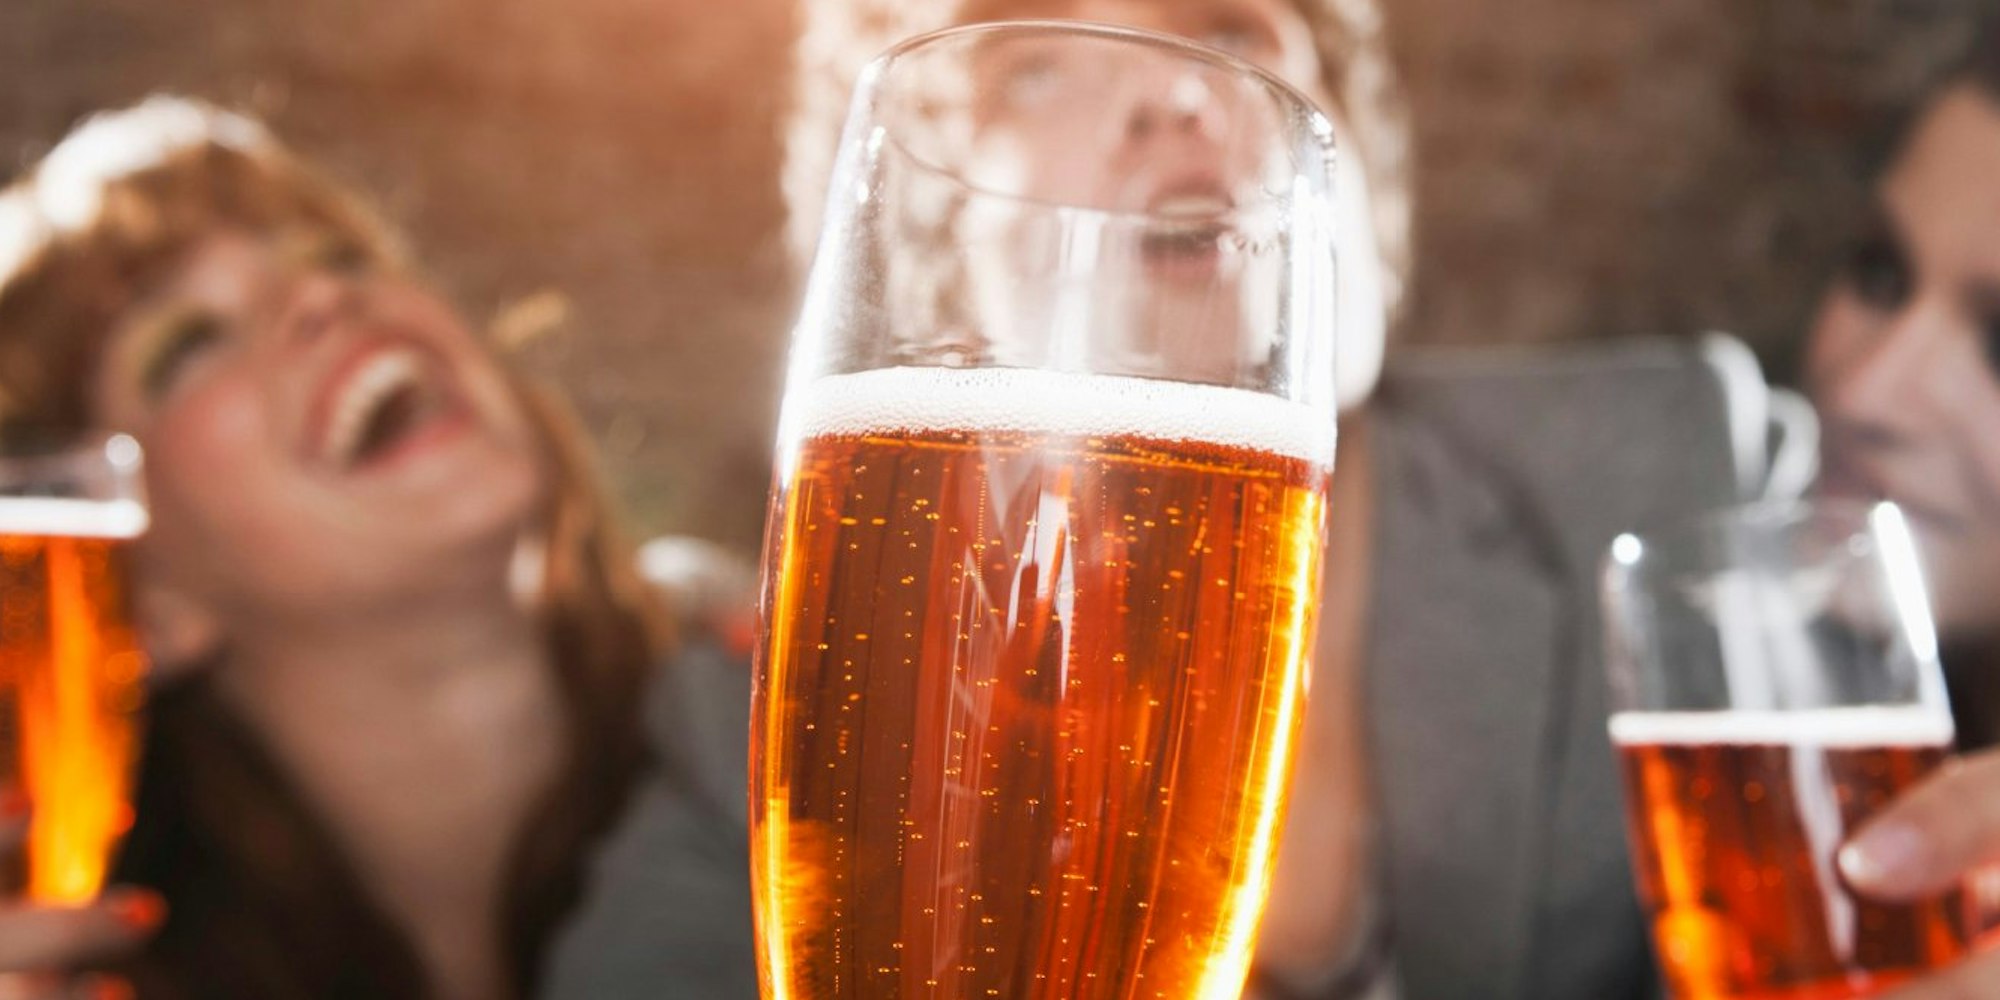 Genießen, statt hemmungslos trinken: Jugendliche sollten lernen, bei Alkohol das richtige Maß zu finden.